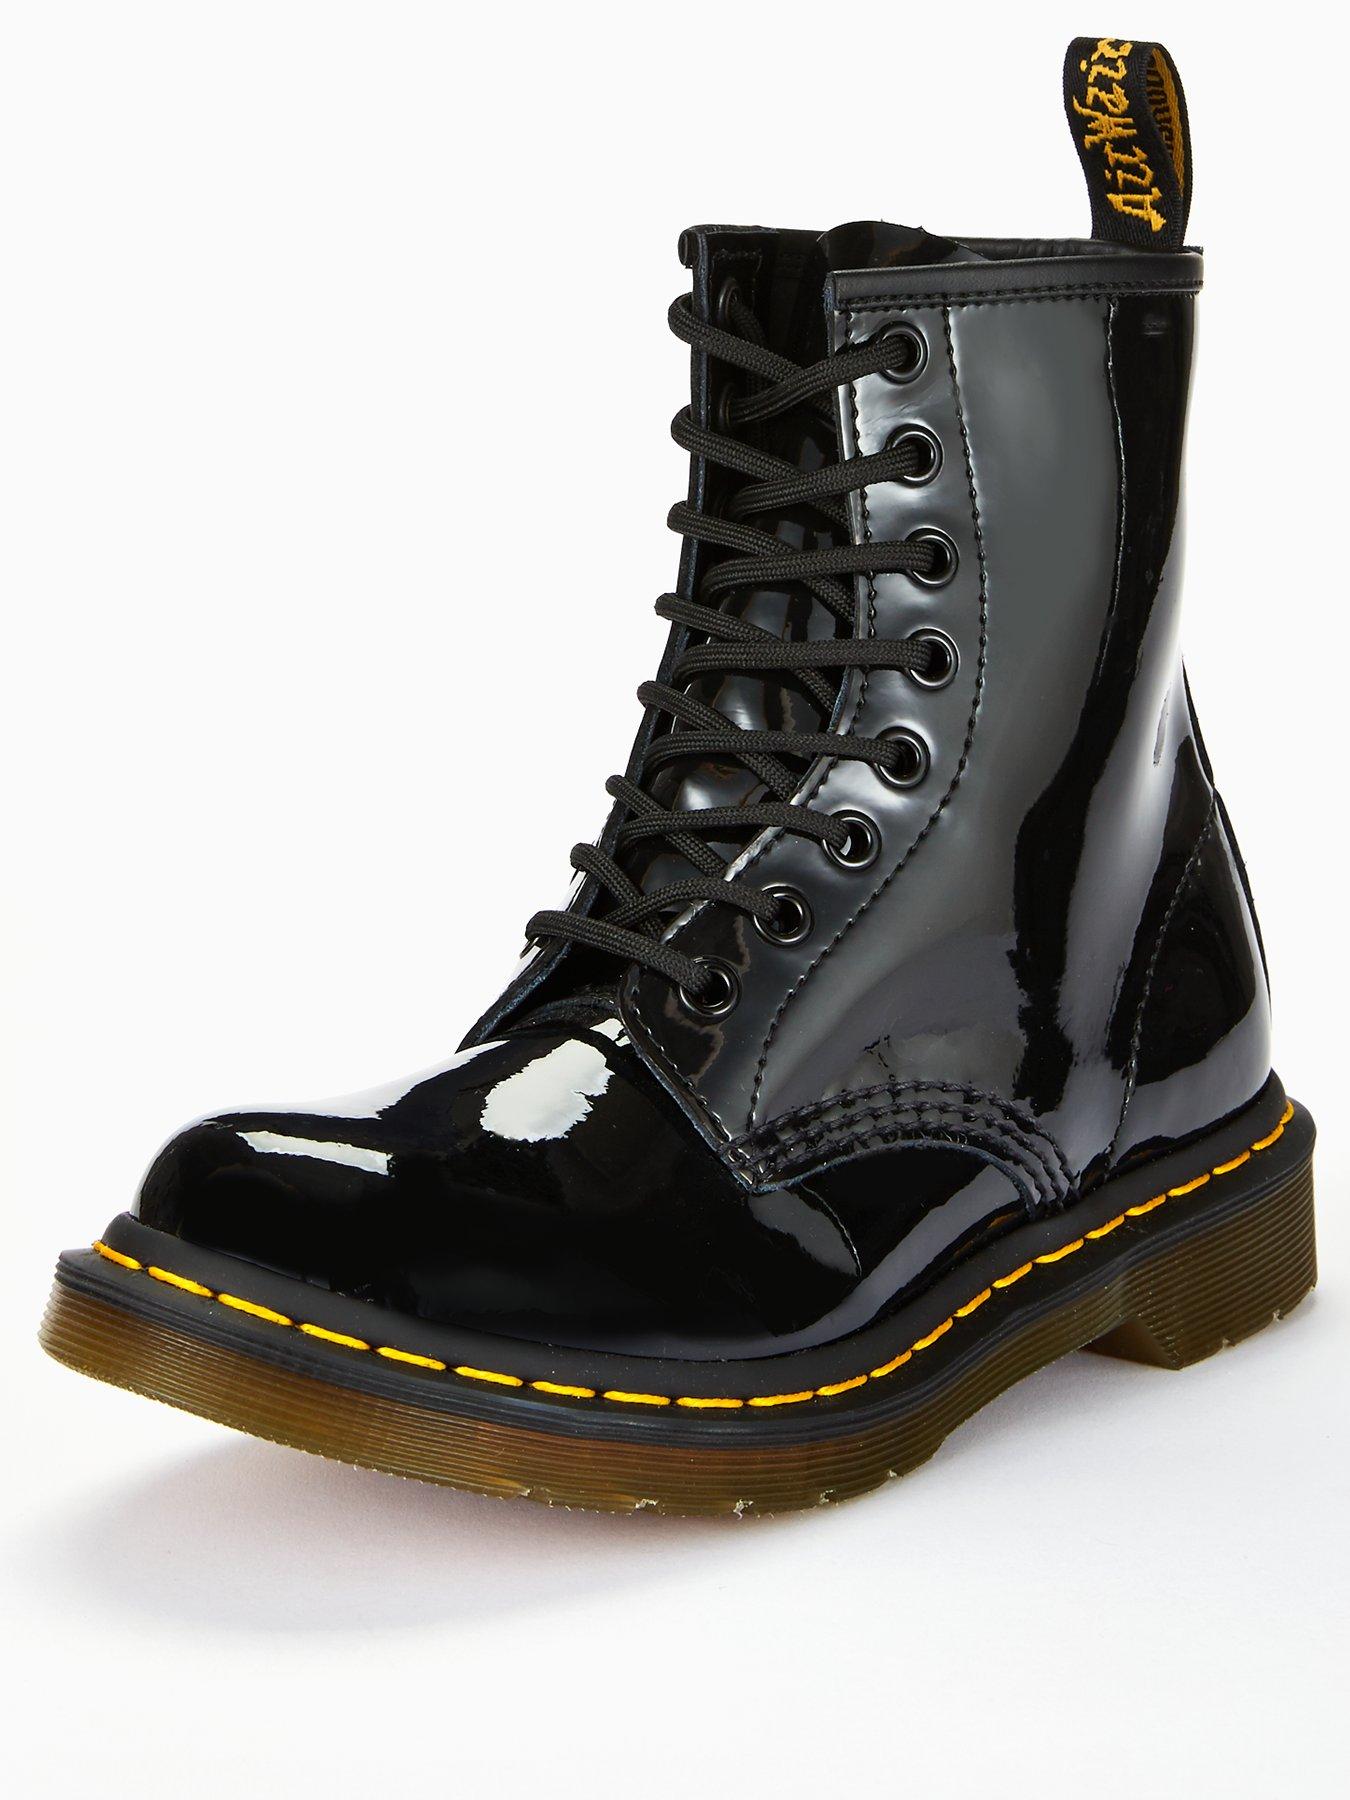 black dm boots size 6